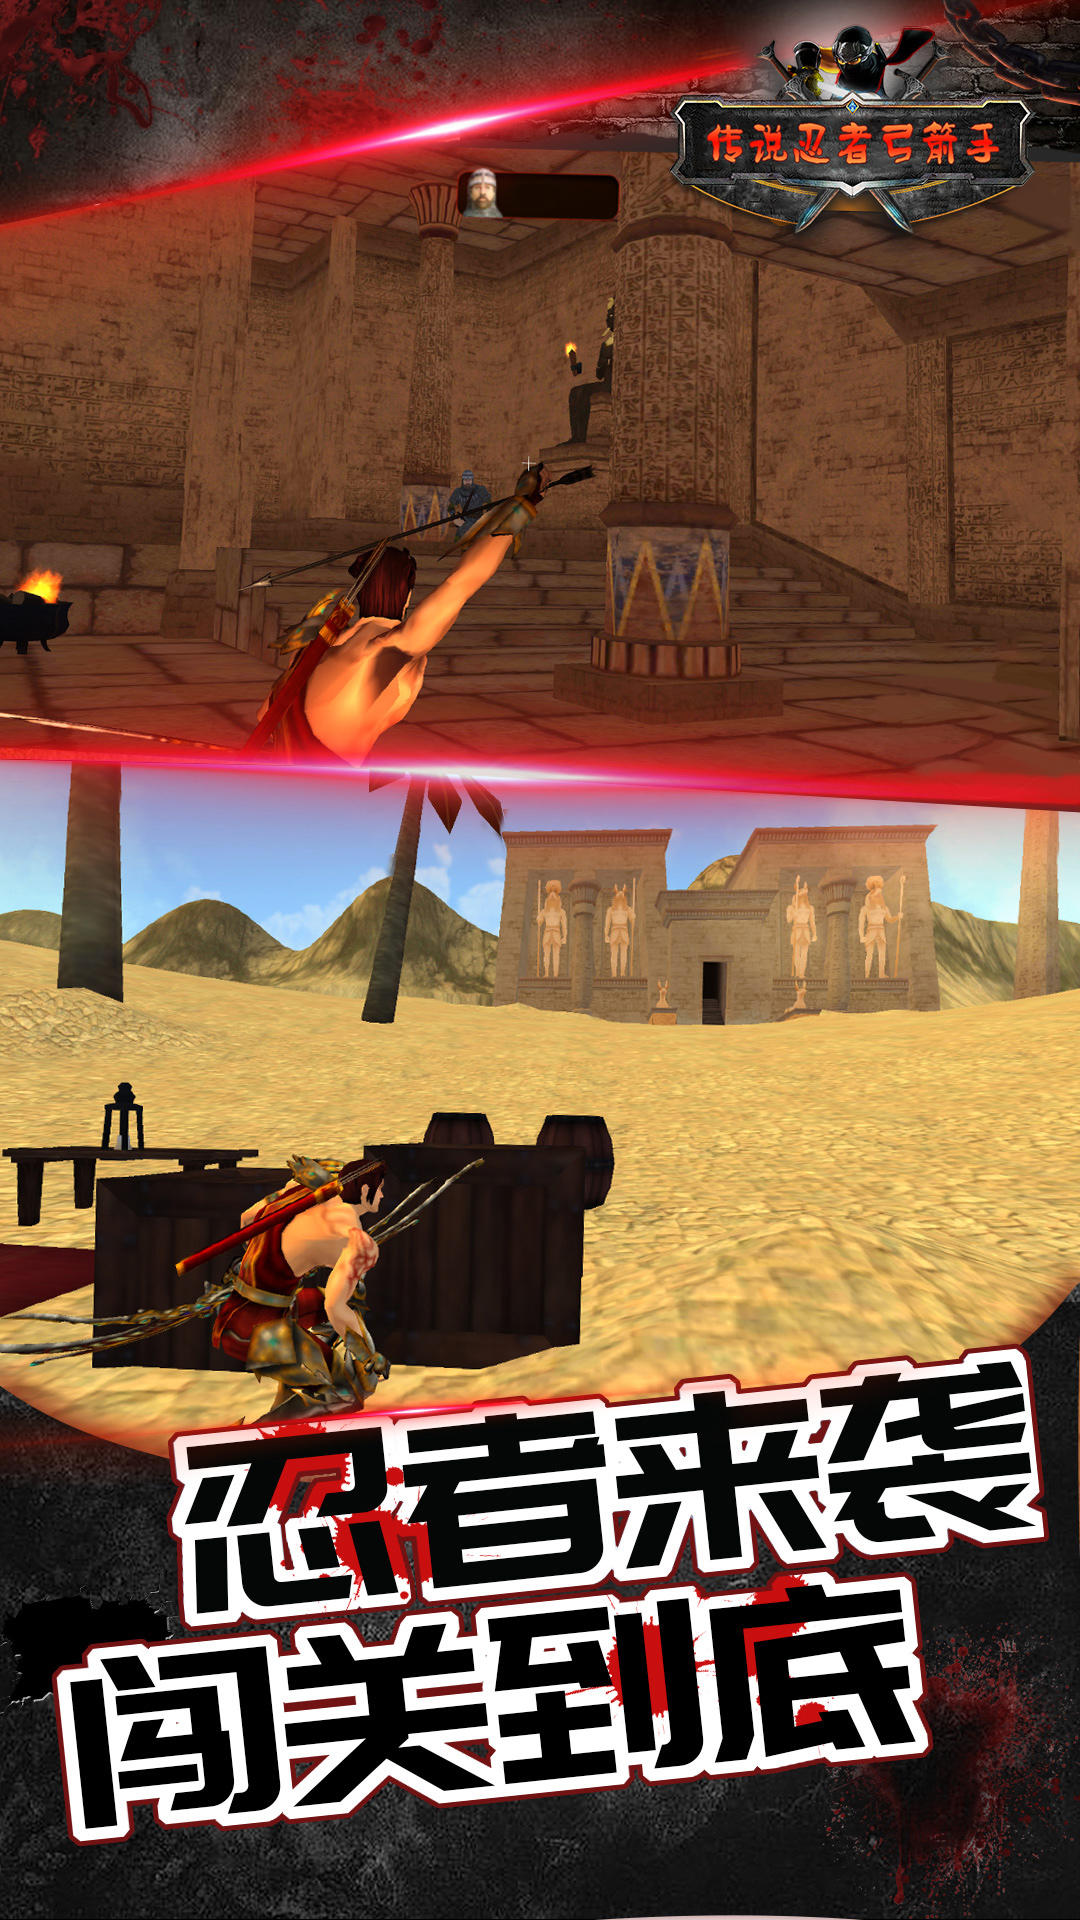 Screenshot 1 of Arqueiro Ninja Lendário 1.0.0